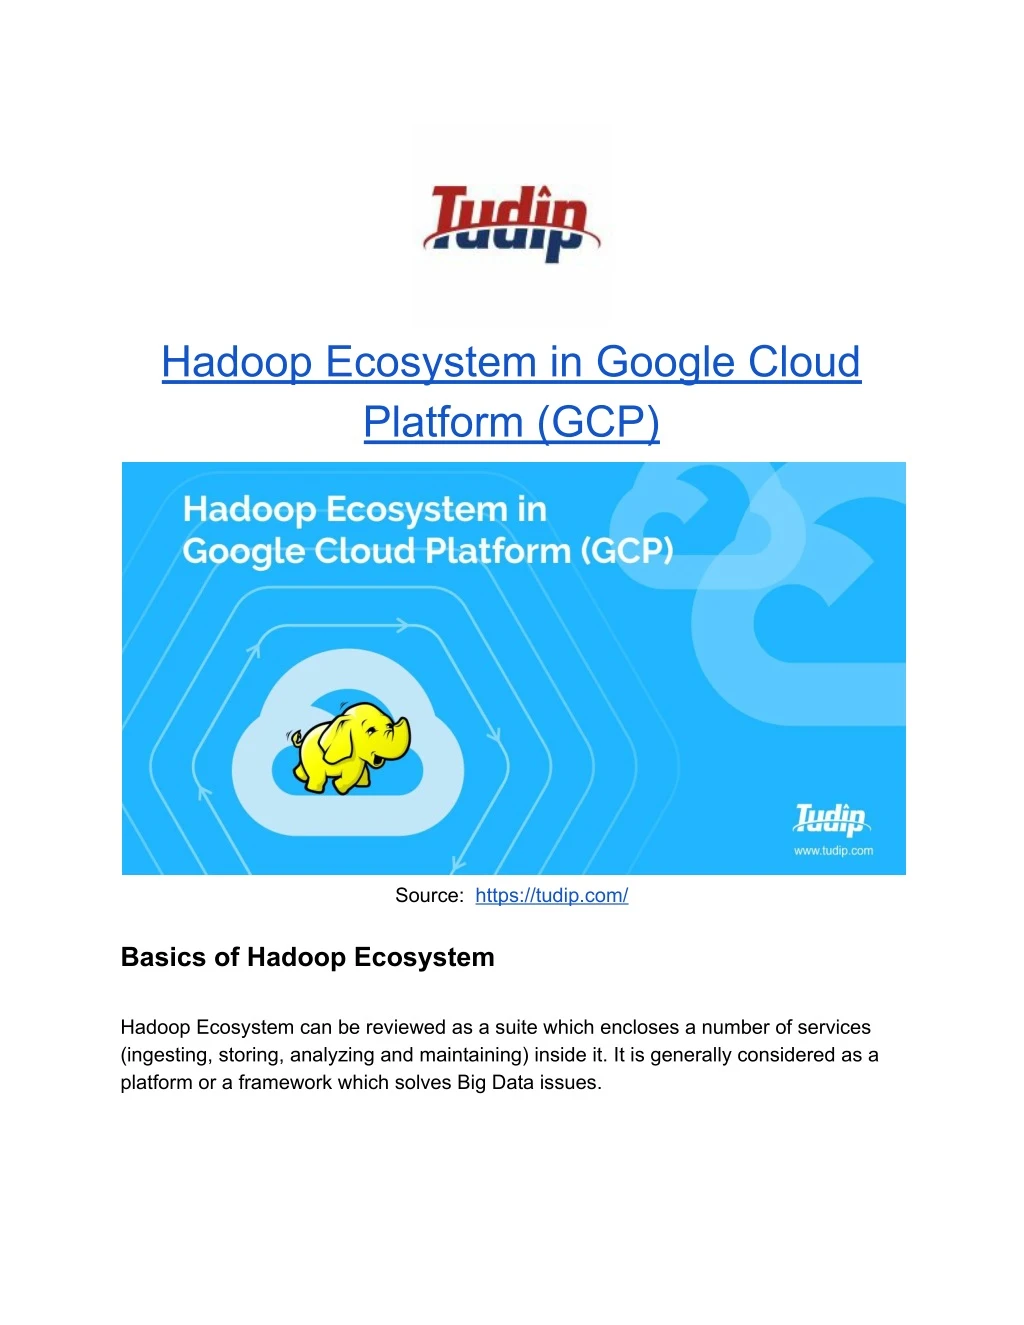 hadoop ecosystem in google cloud platform gcp